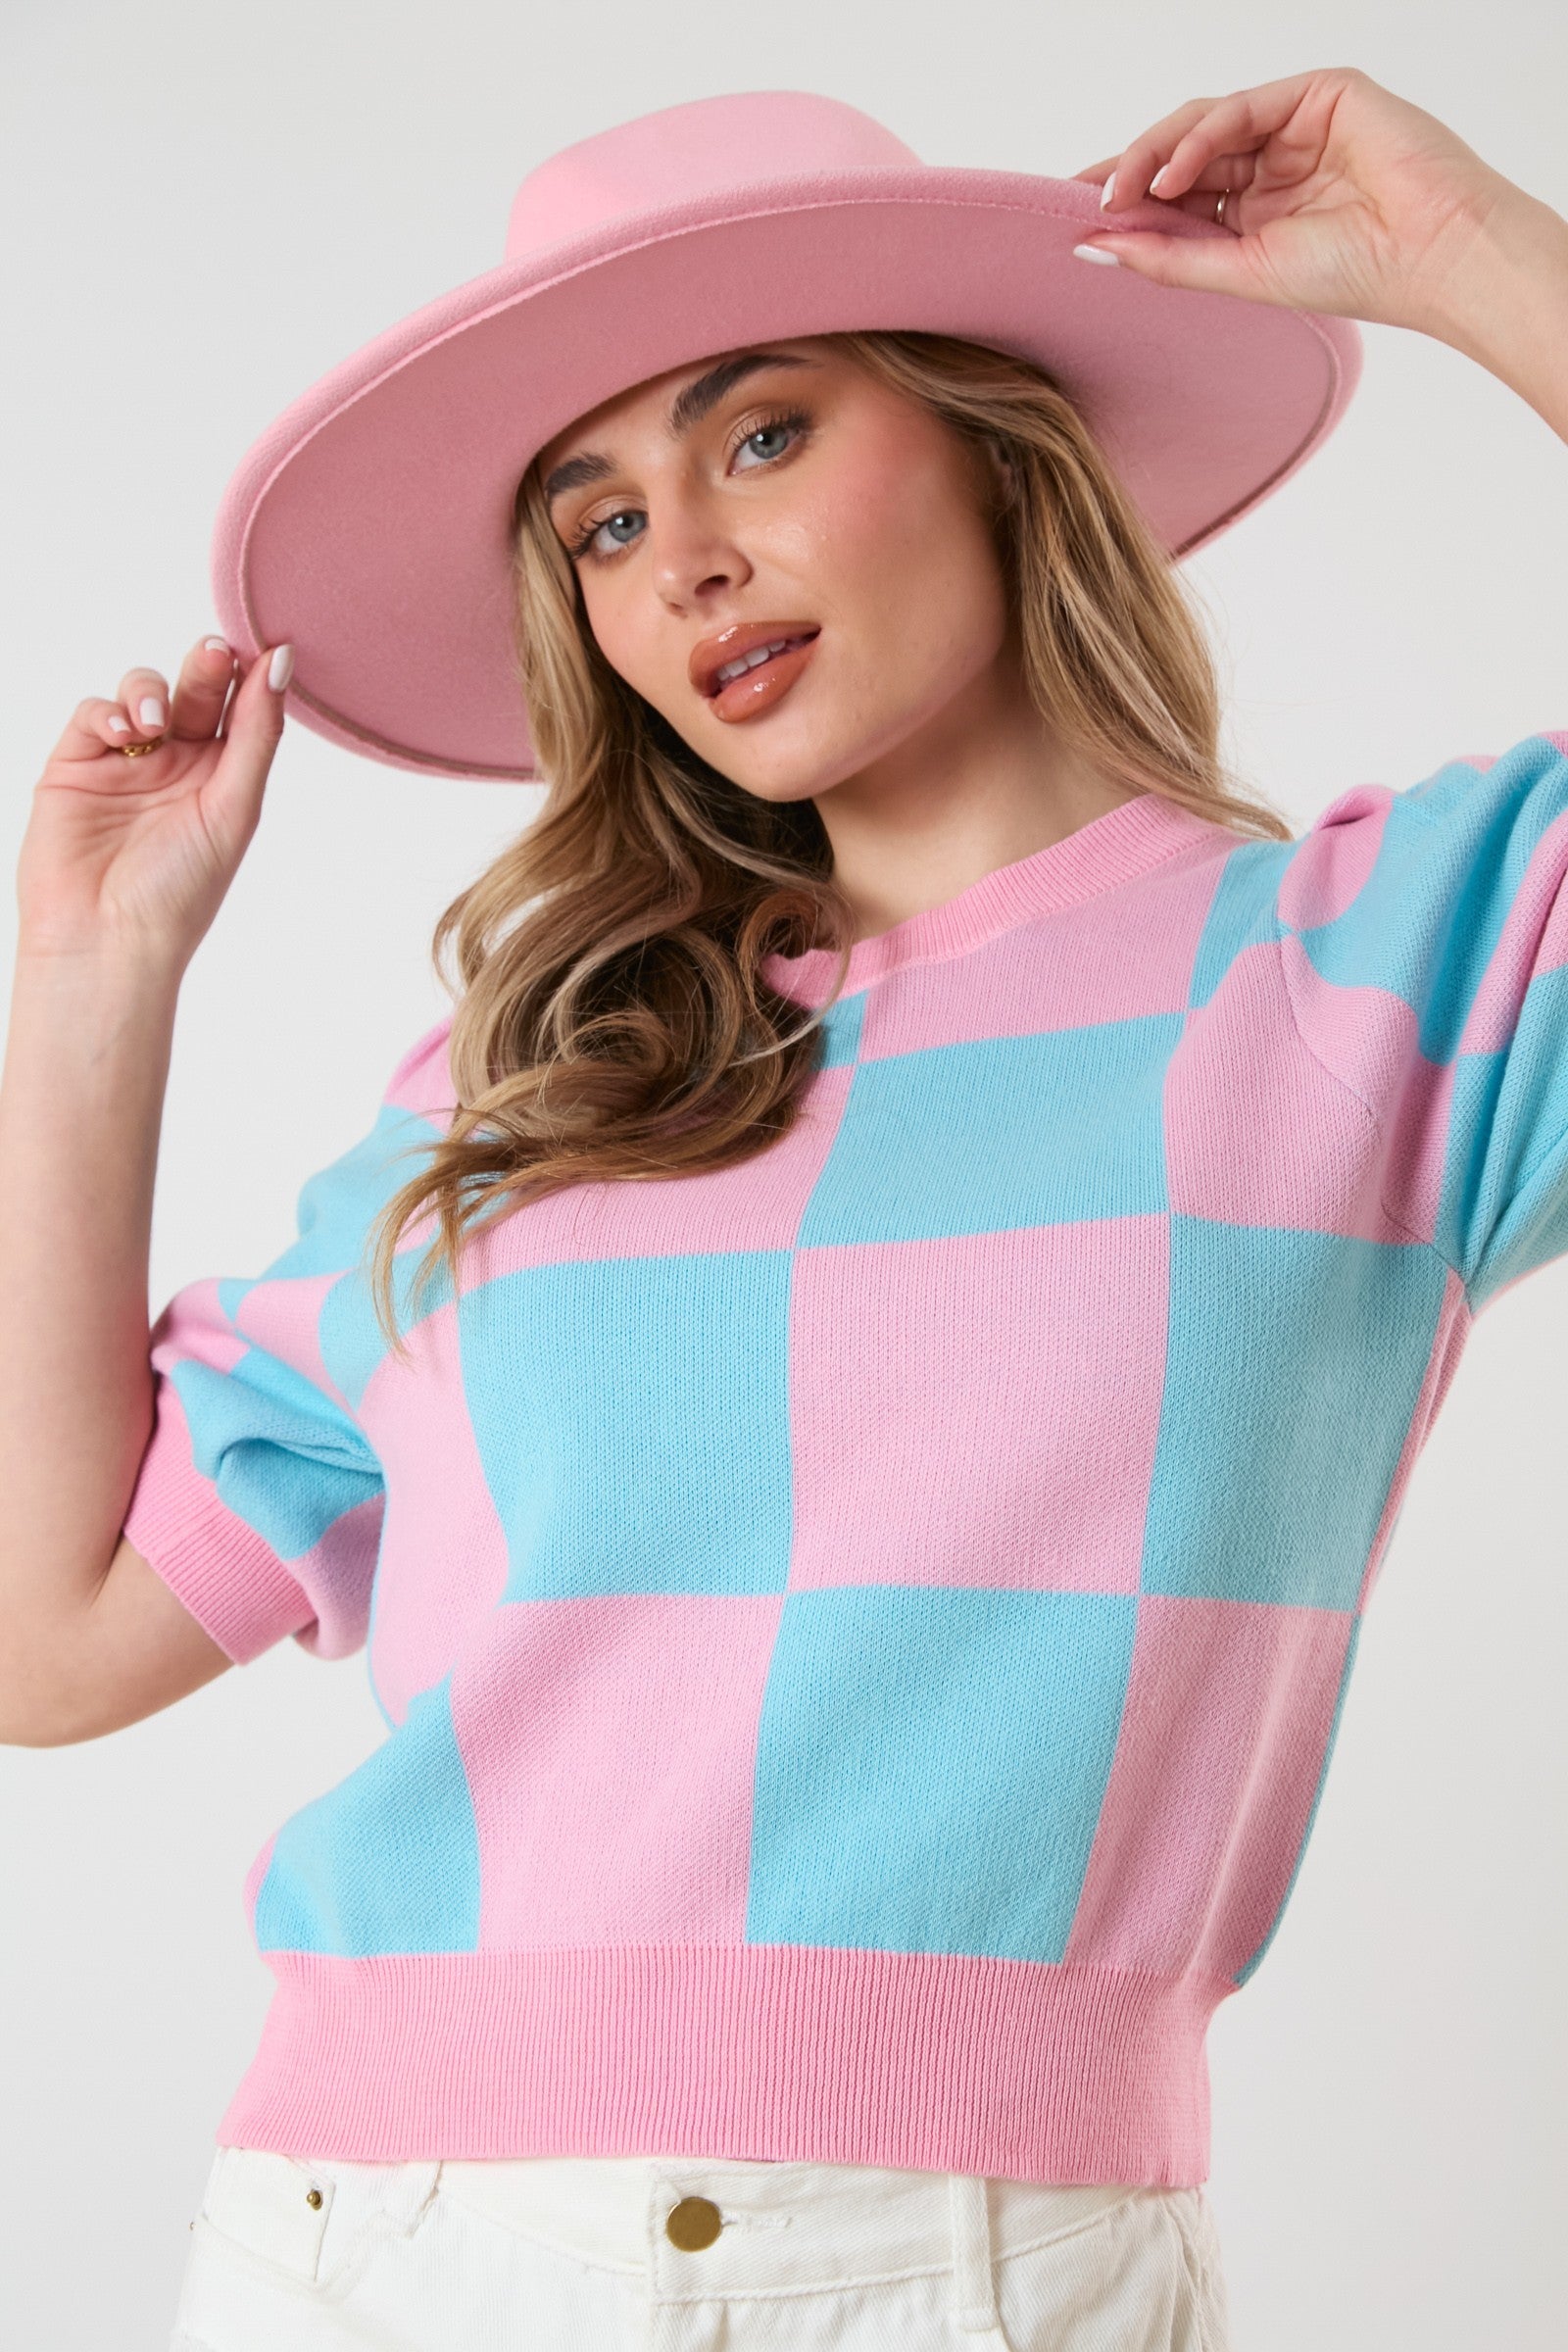 Della Checkered Sweater Top